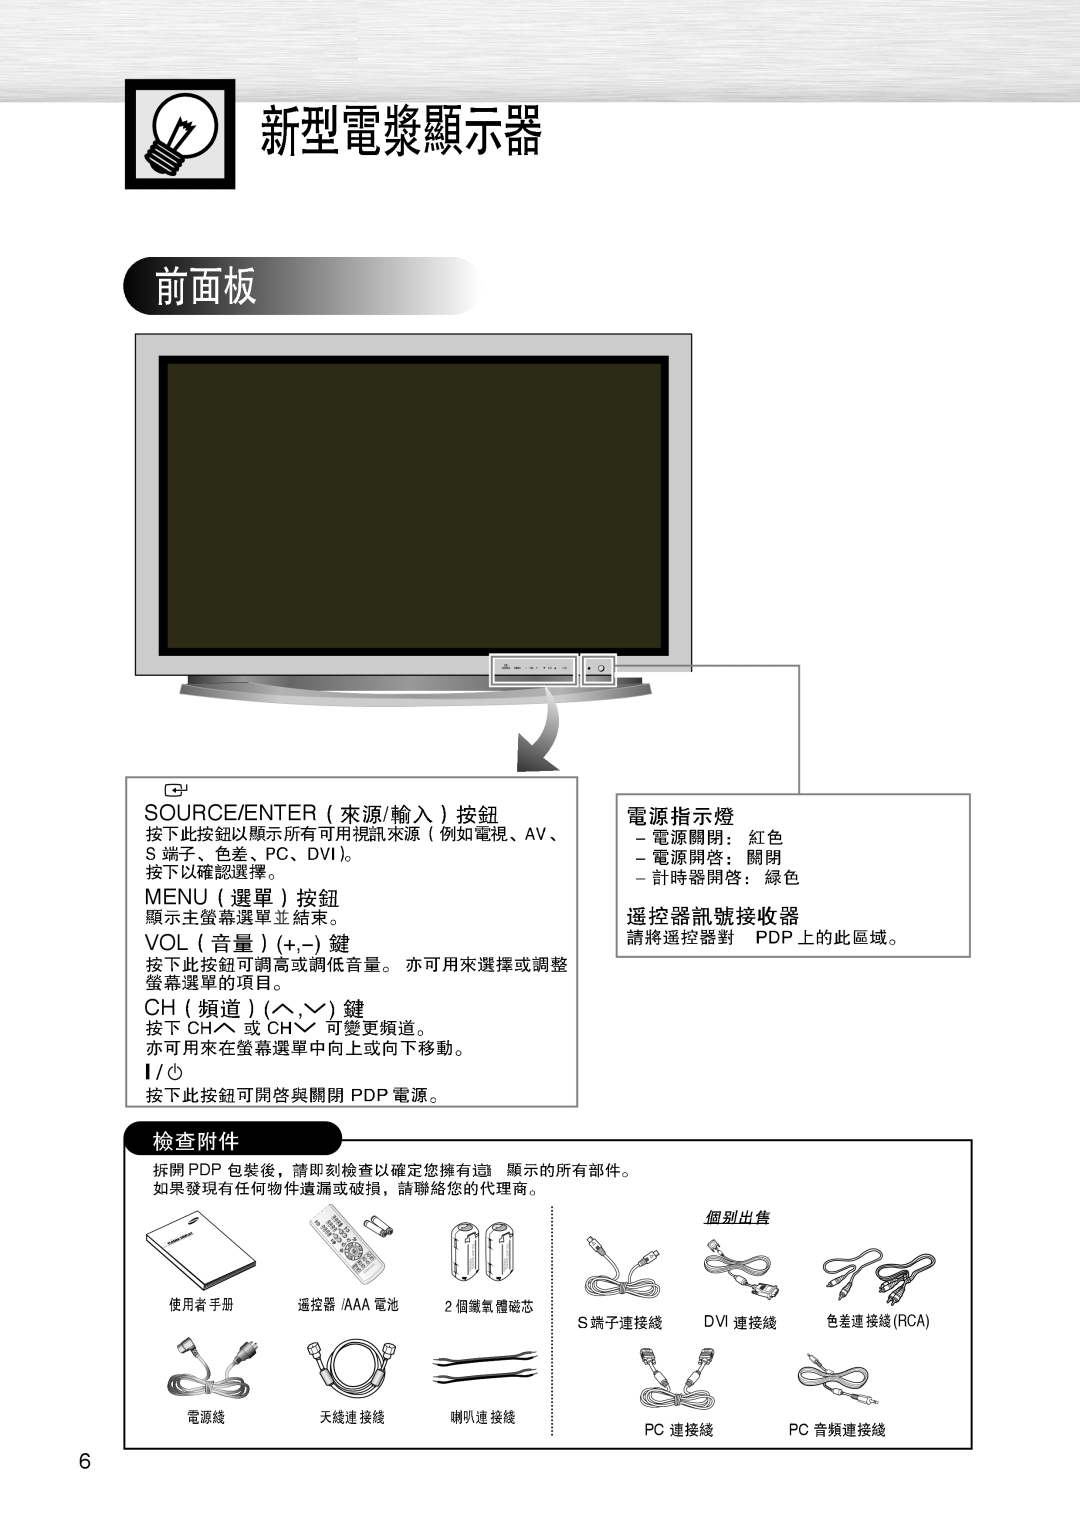 Samsung PL-42D4S manual Source/Enter Menu Vol 